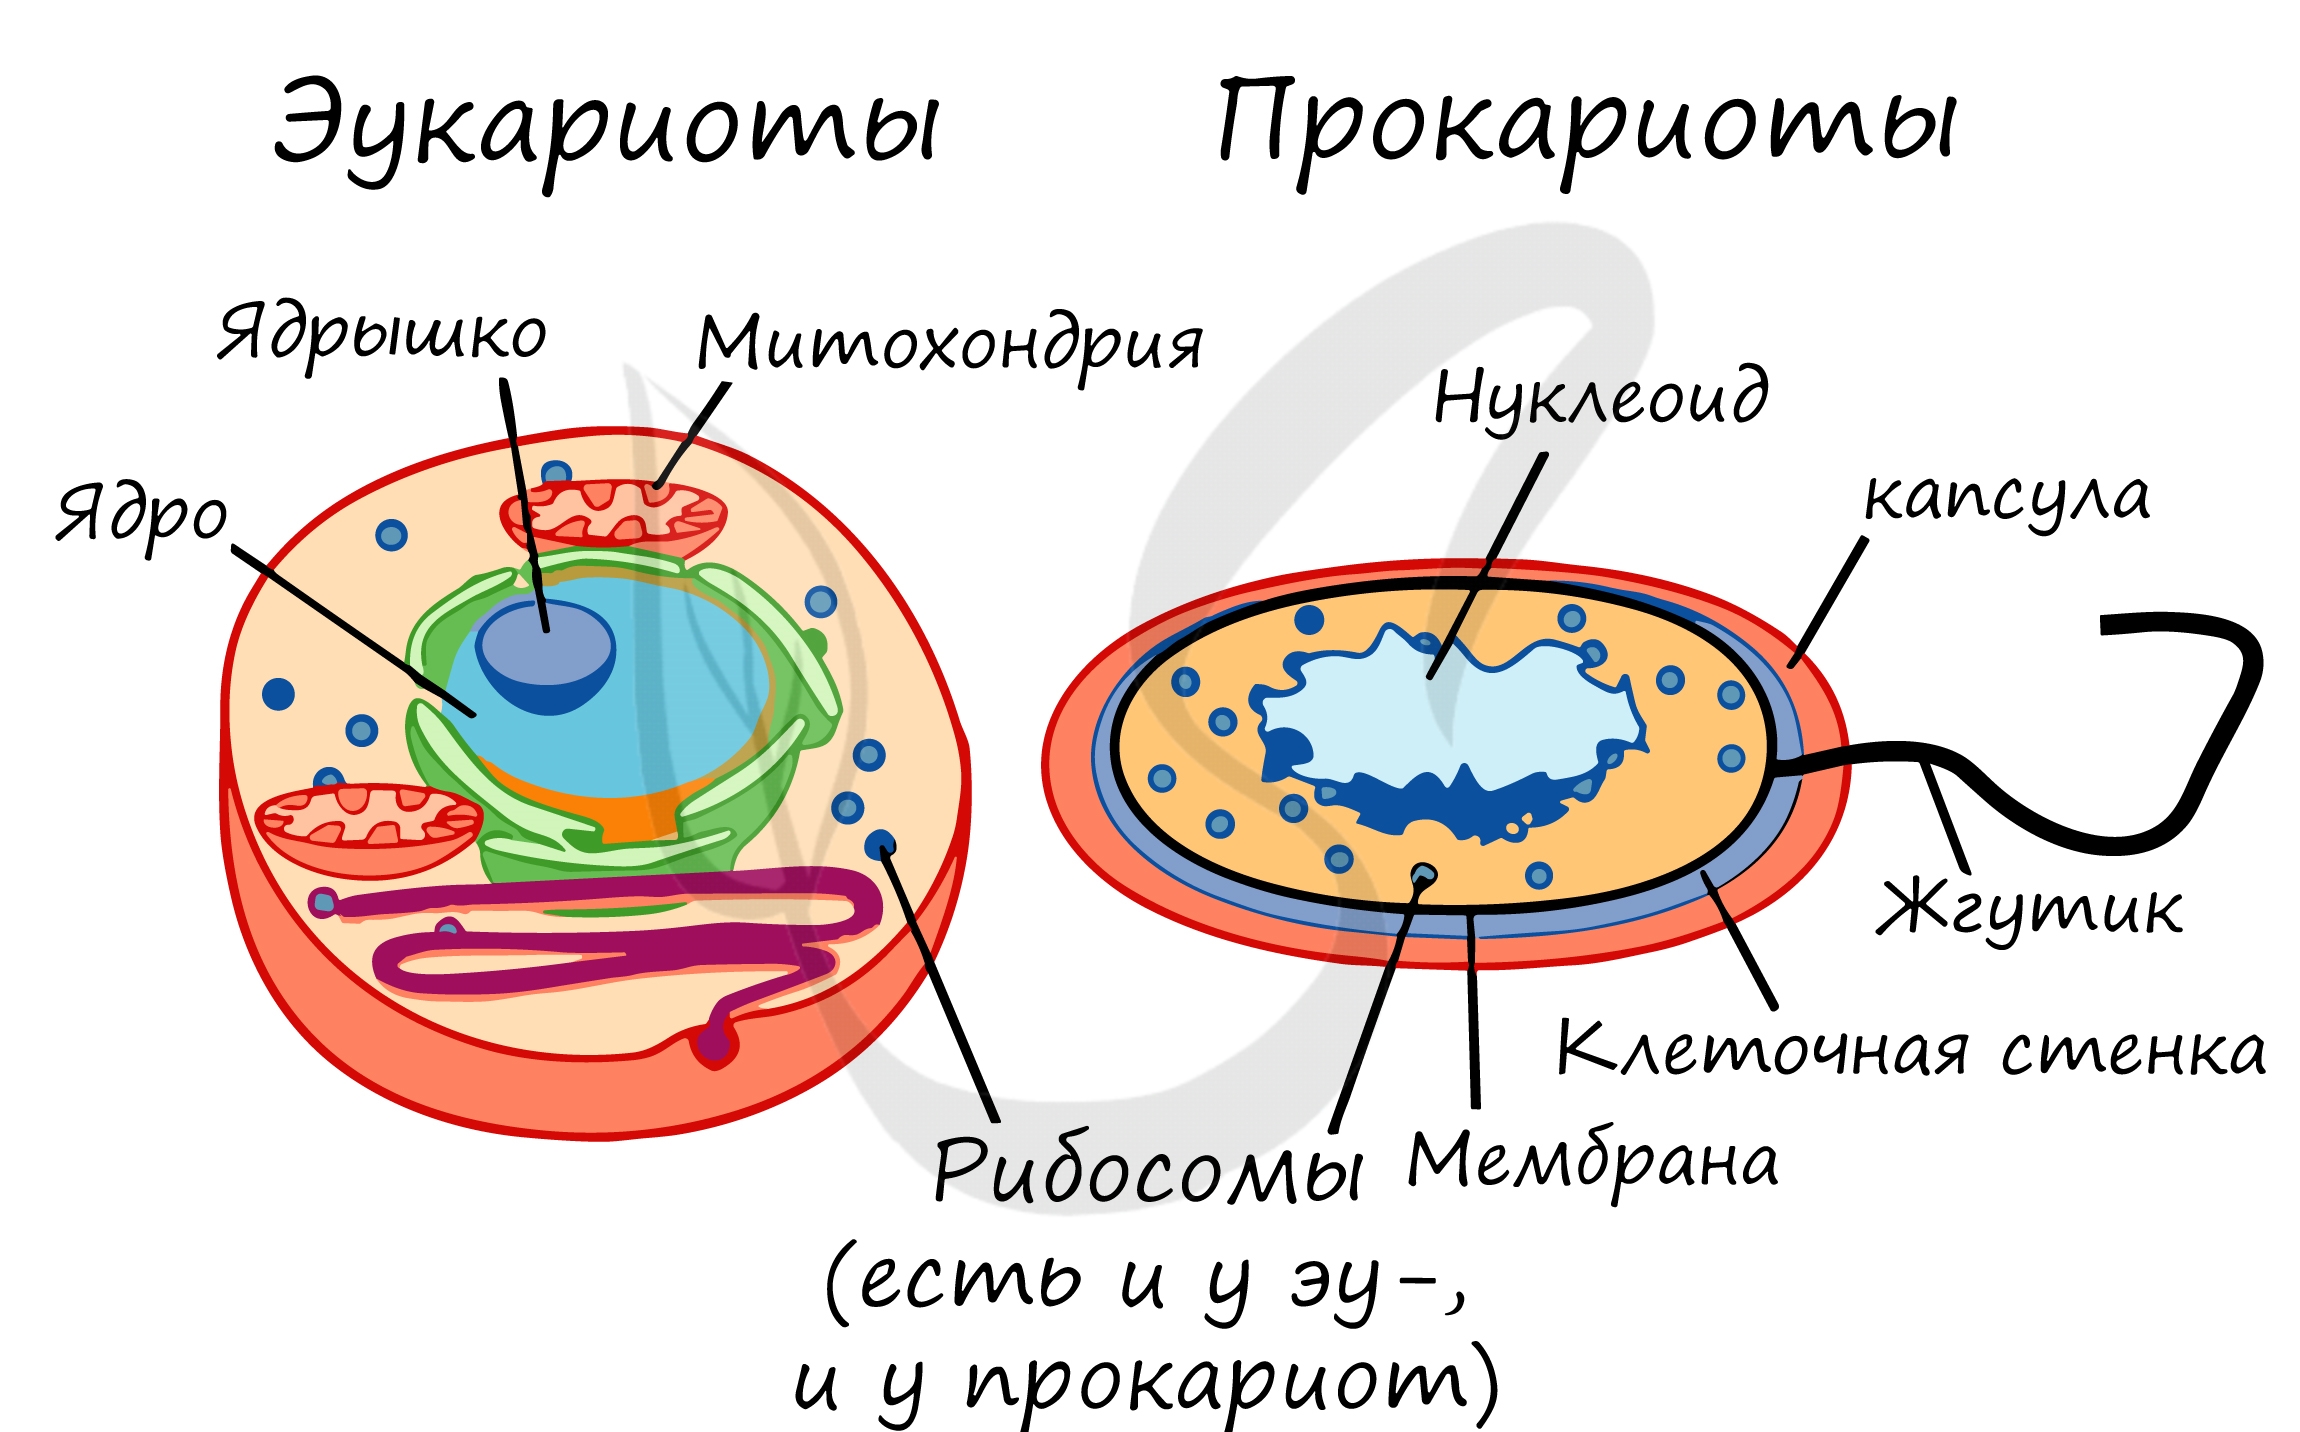 Прокариоты группы организмов. Строение клетки прокариот и эукариот. Строение бактерий прокариоты и эукариоты. Отличие прокариот от эукариот рисунок. Прокариотическая клетка и эукариотическая клетка строение.